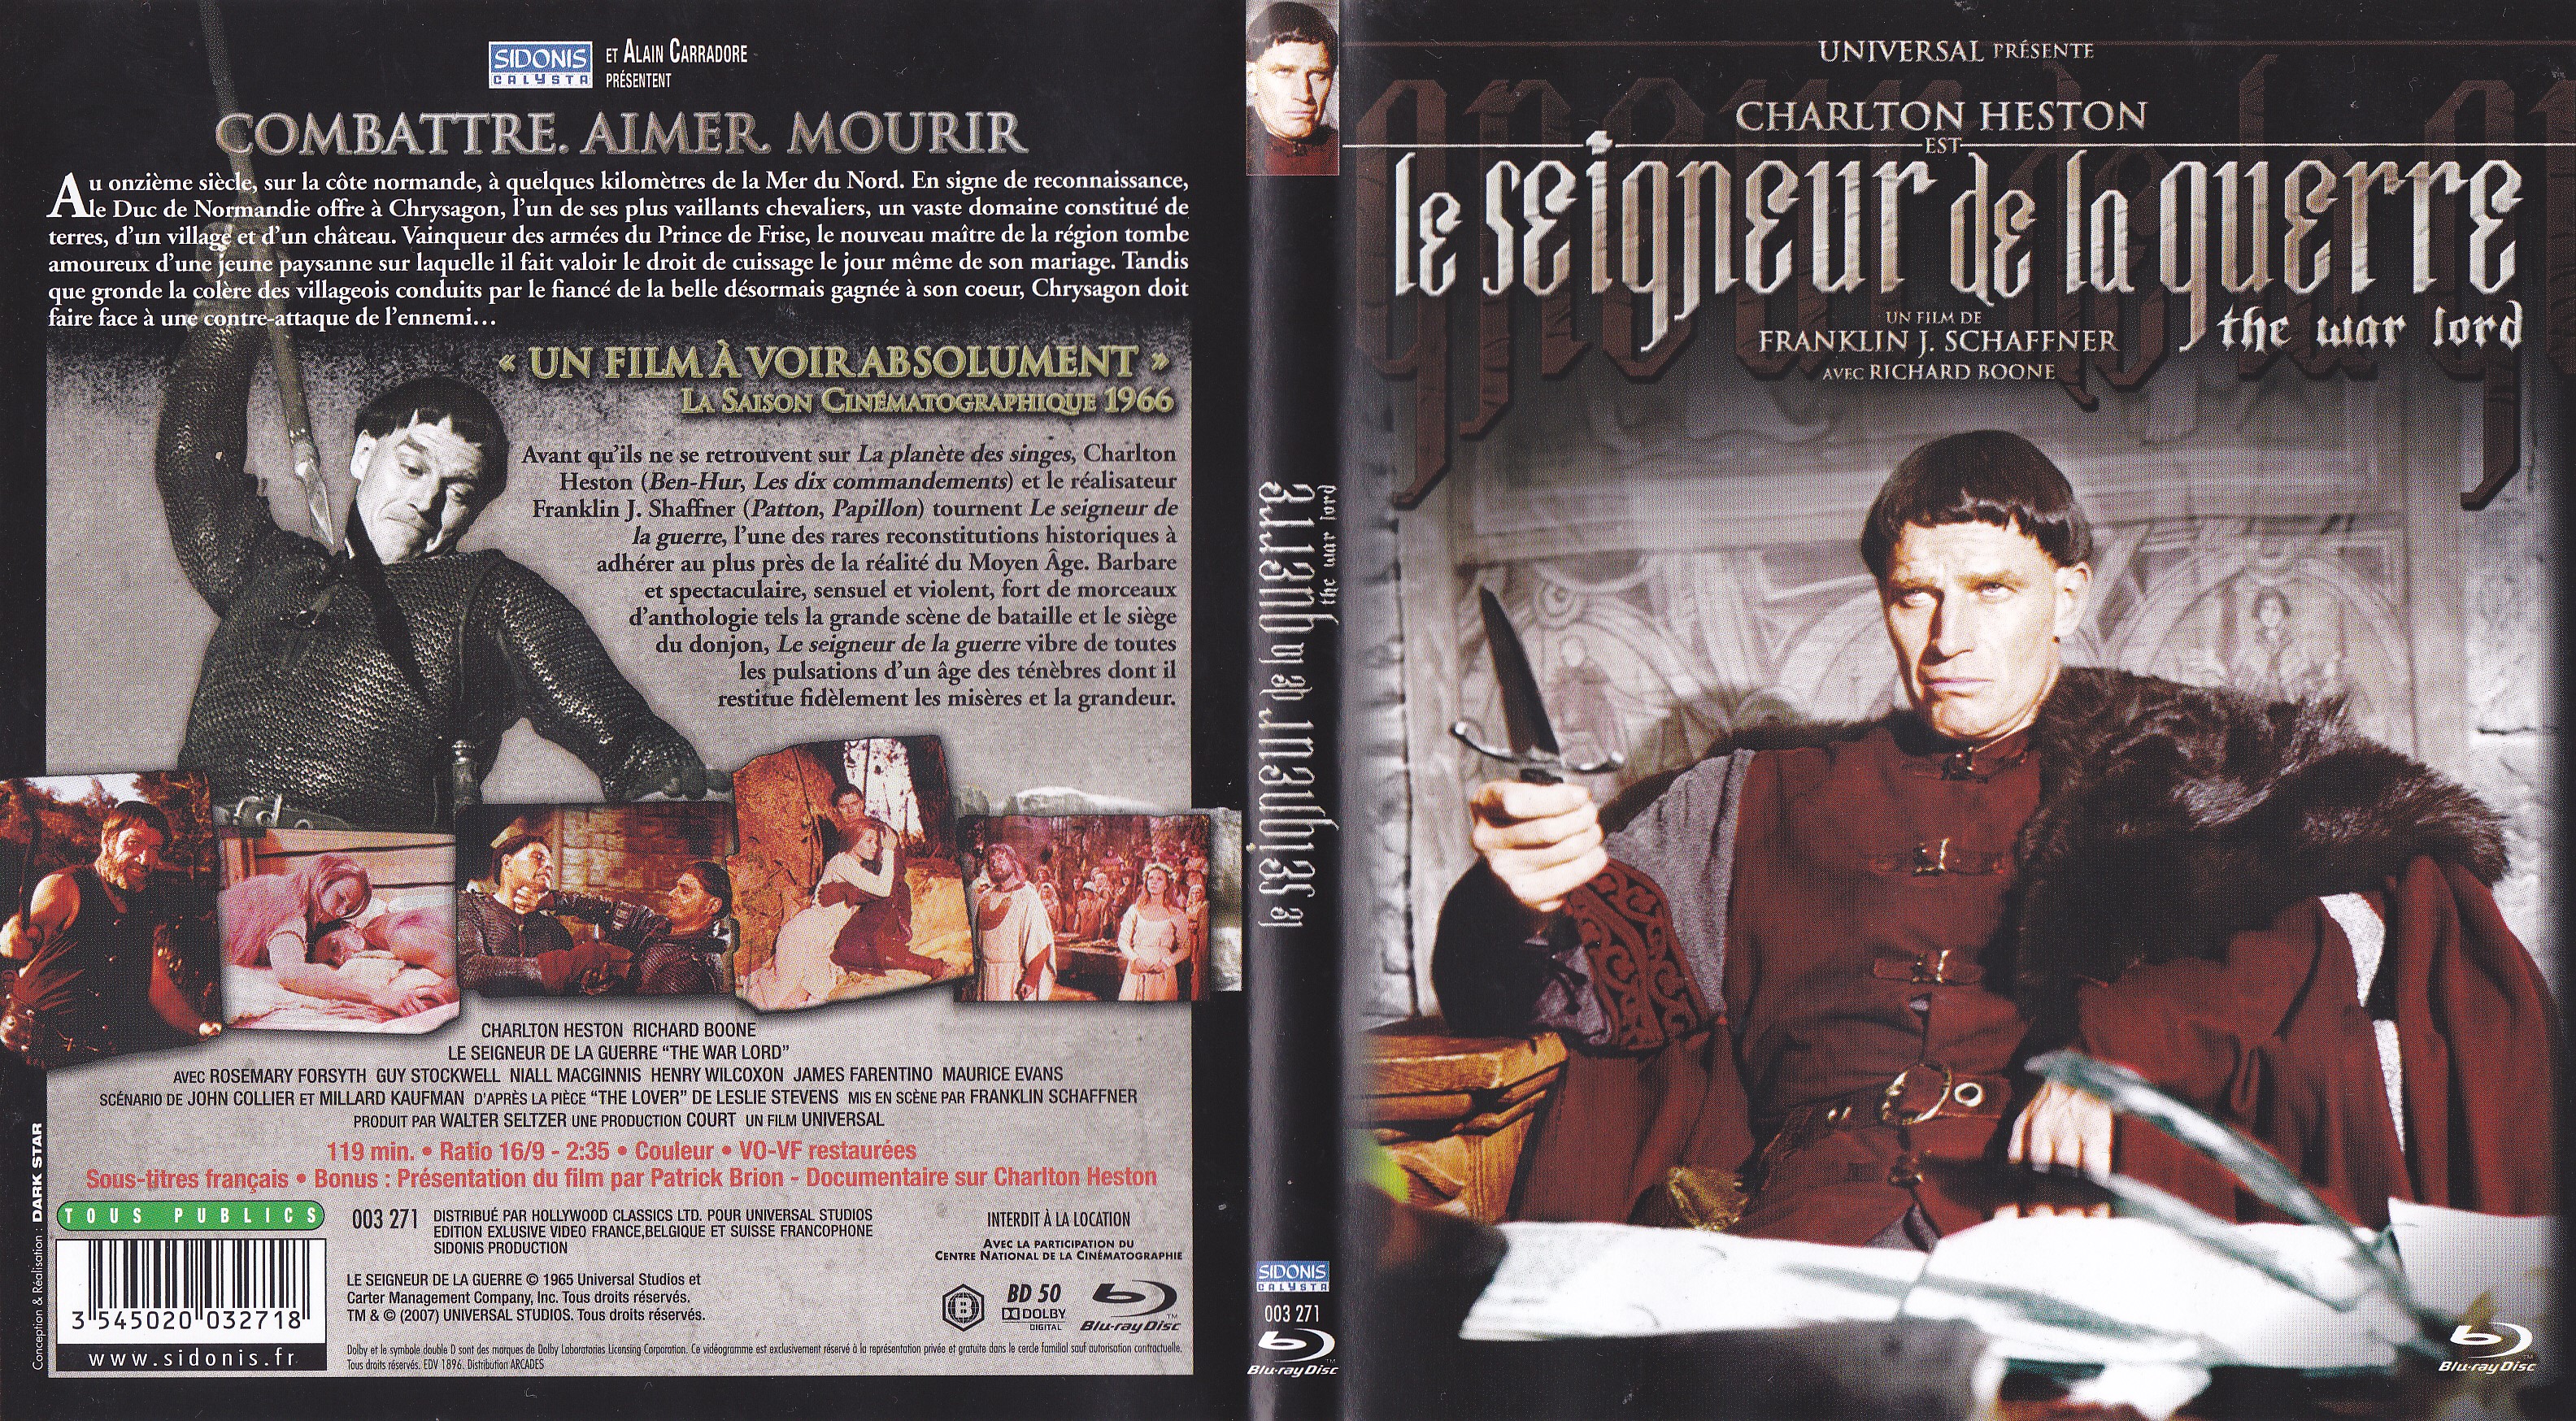 Jaquette DVD Le Seigneur de la guerre (BLU-RAY)